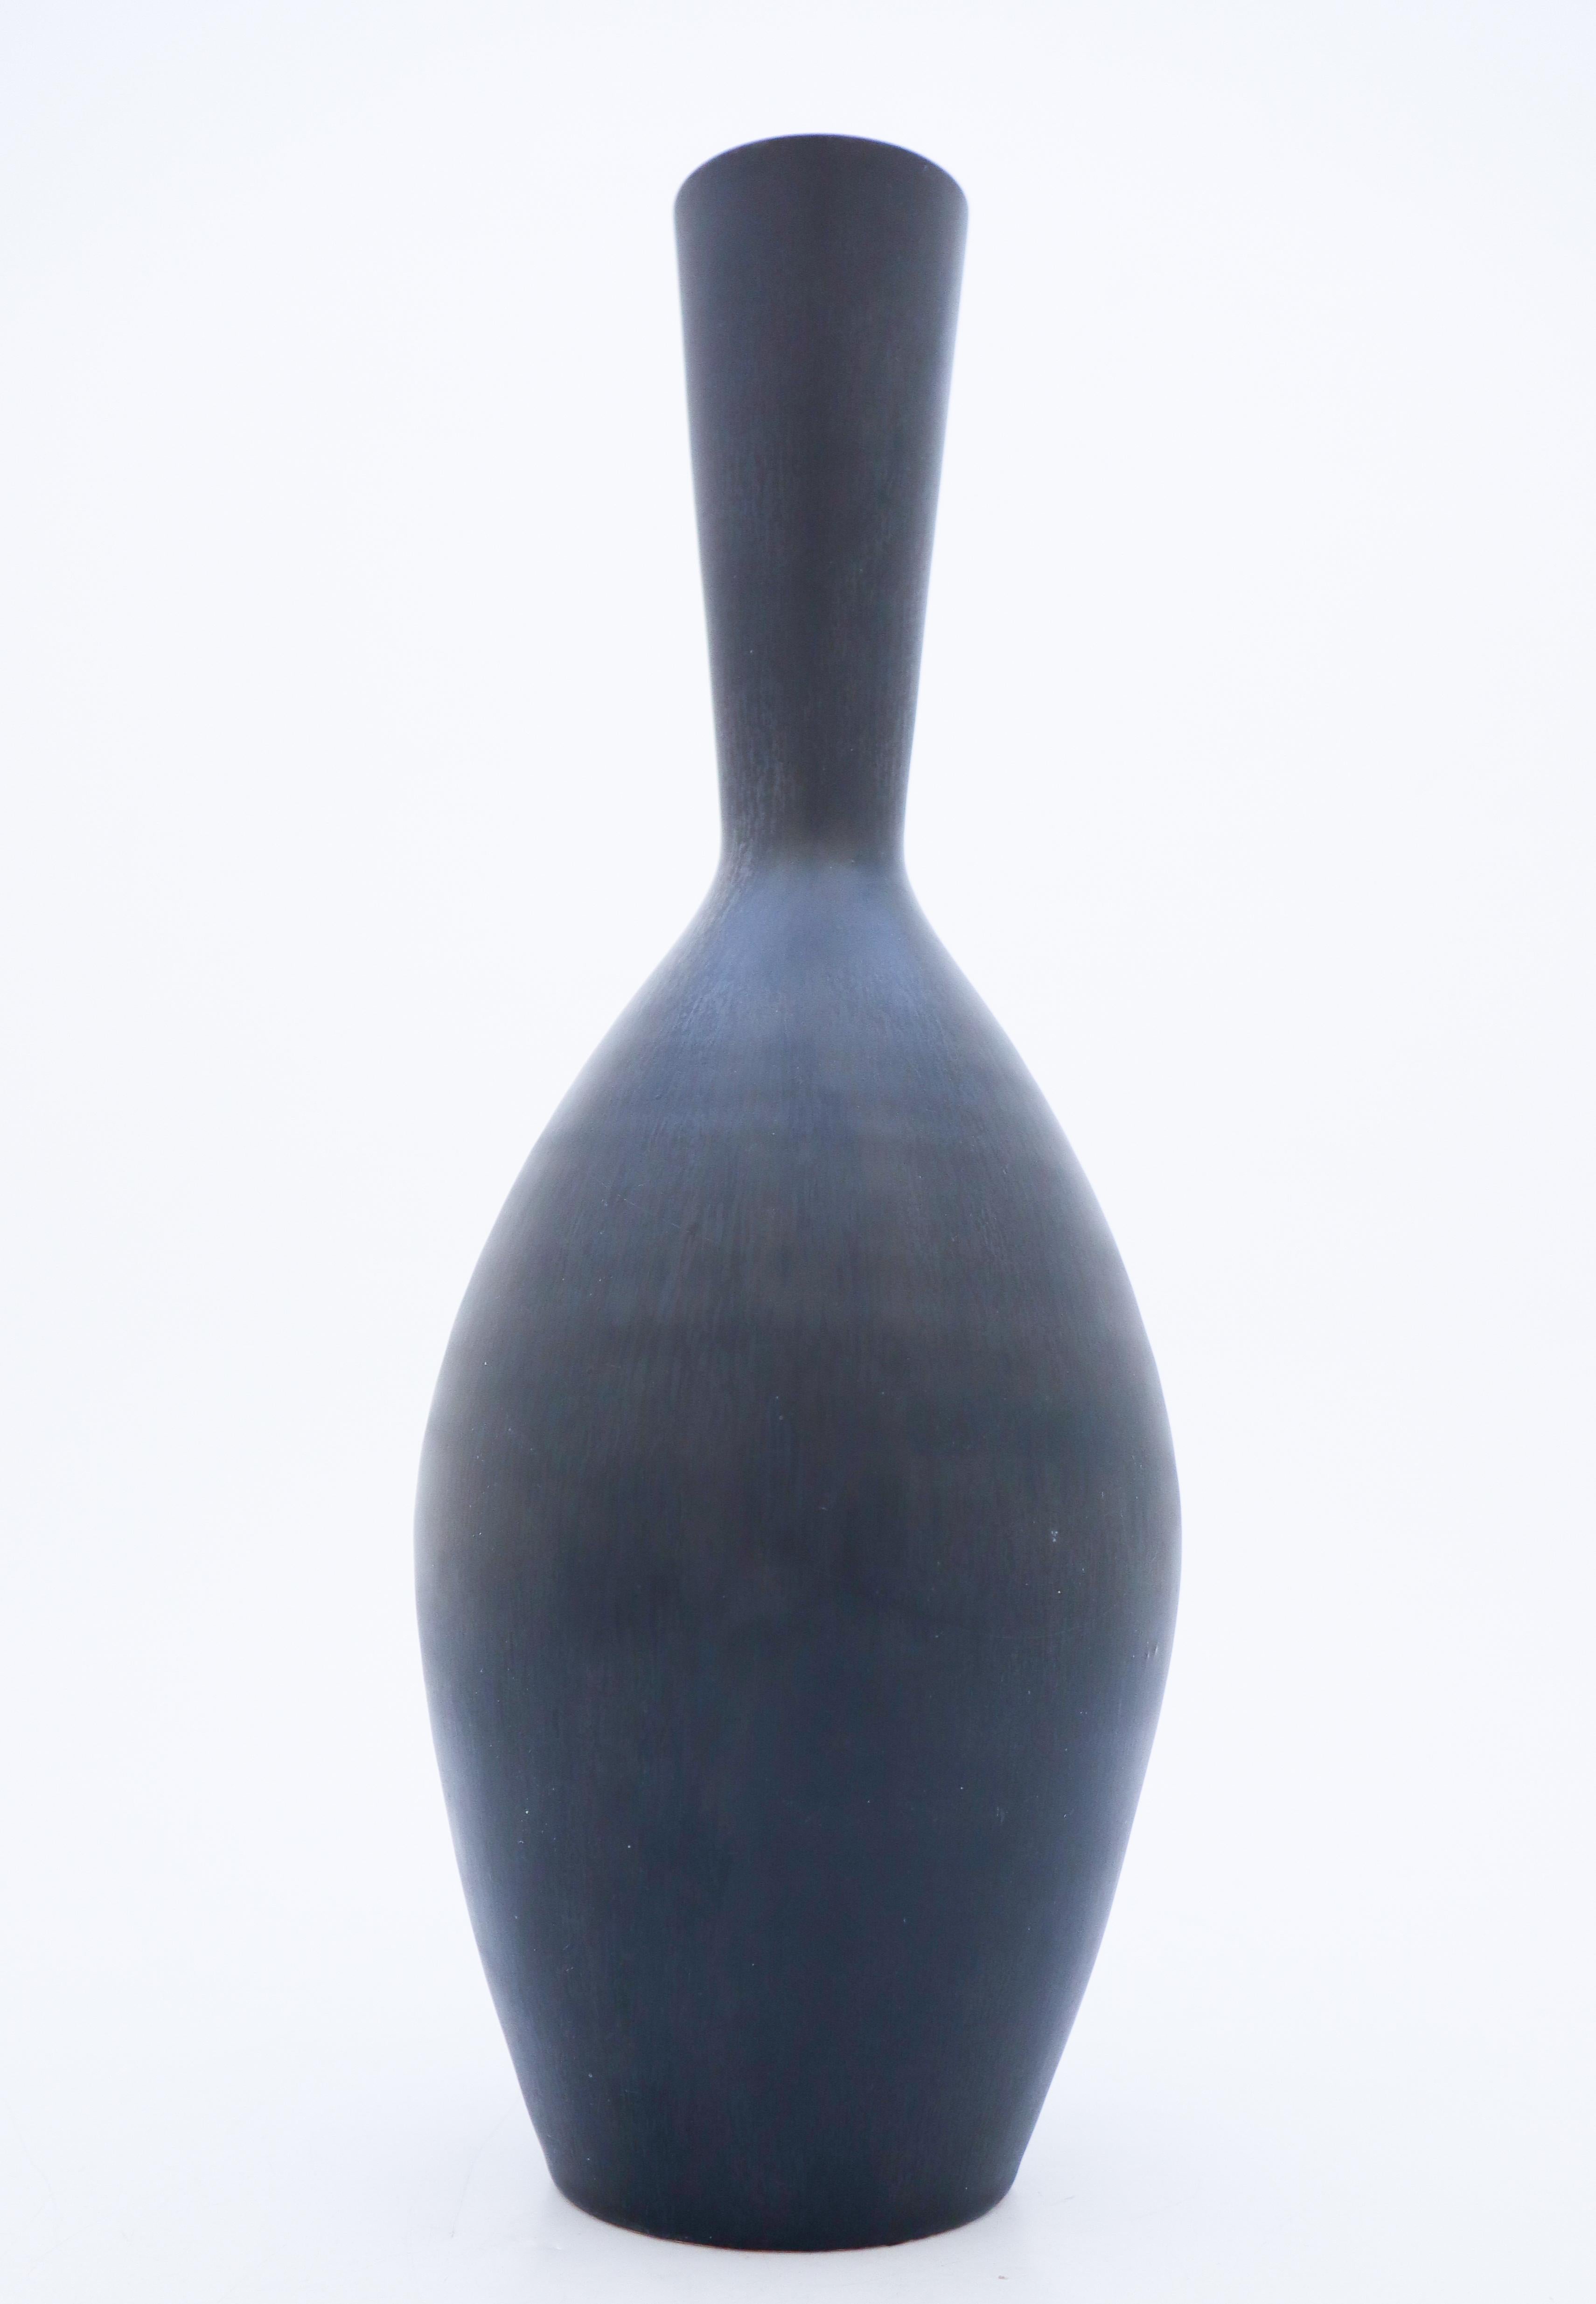 Un beau vase suédois du milieu du siècle en grès de Rörstrand, conçu par Carl-Harry Stålhane. Le vase est marqué comme étant de 2e qualité en raison d'un certain flou dans la glaçure autour du col.